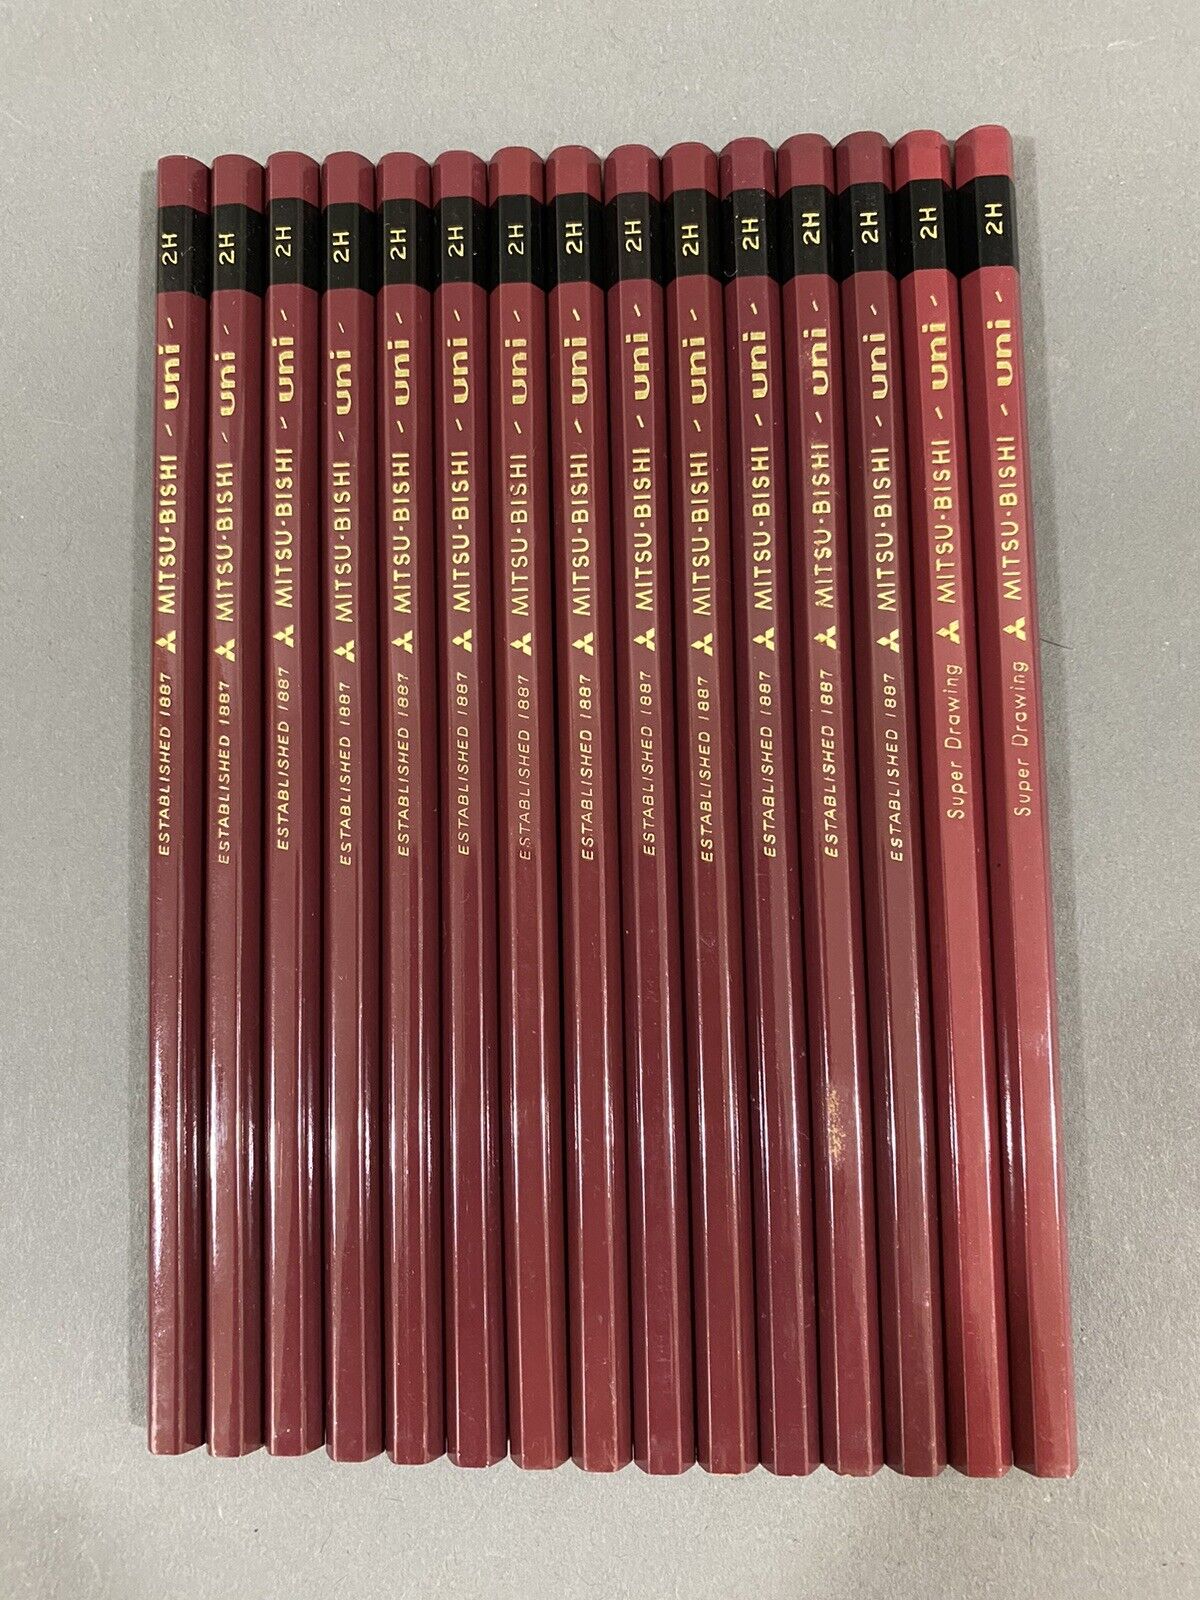 15 DIFFERENT Japanese Vintage Pencil Mitsubishi UNI JIS NOS 2H